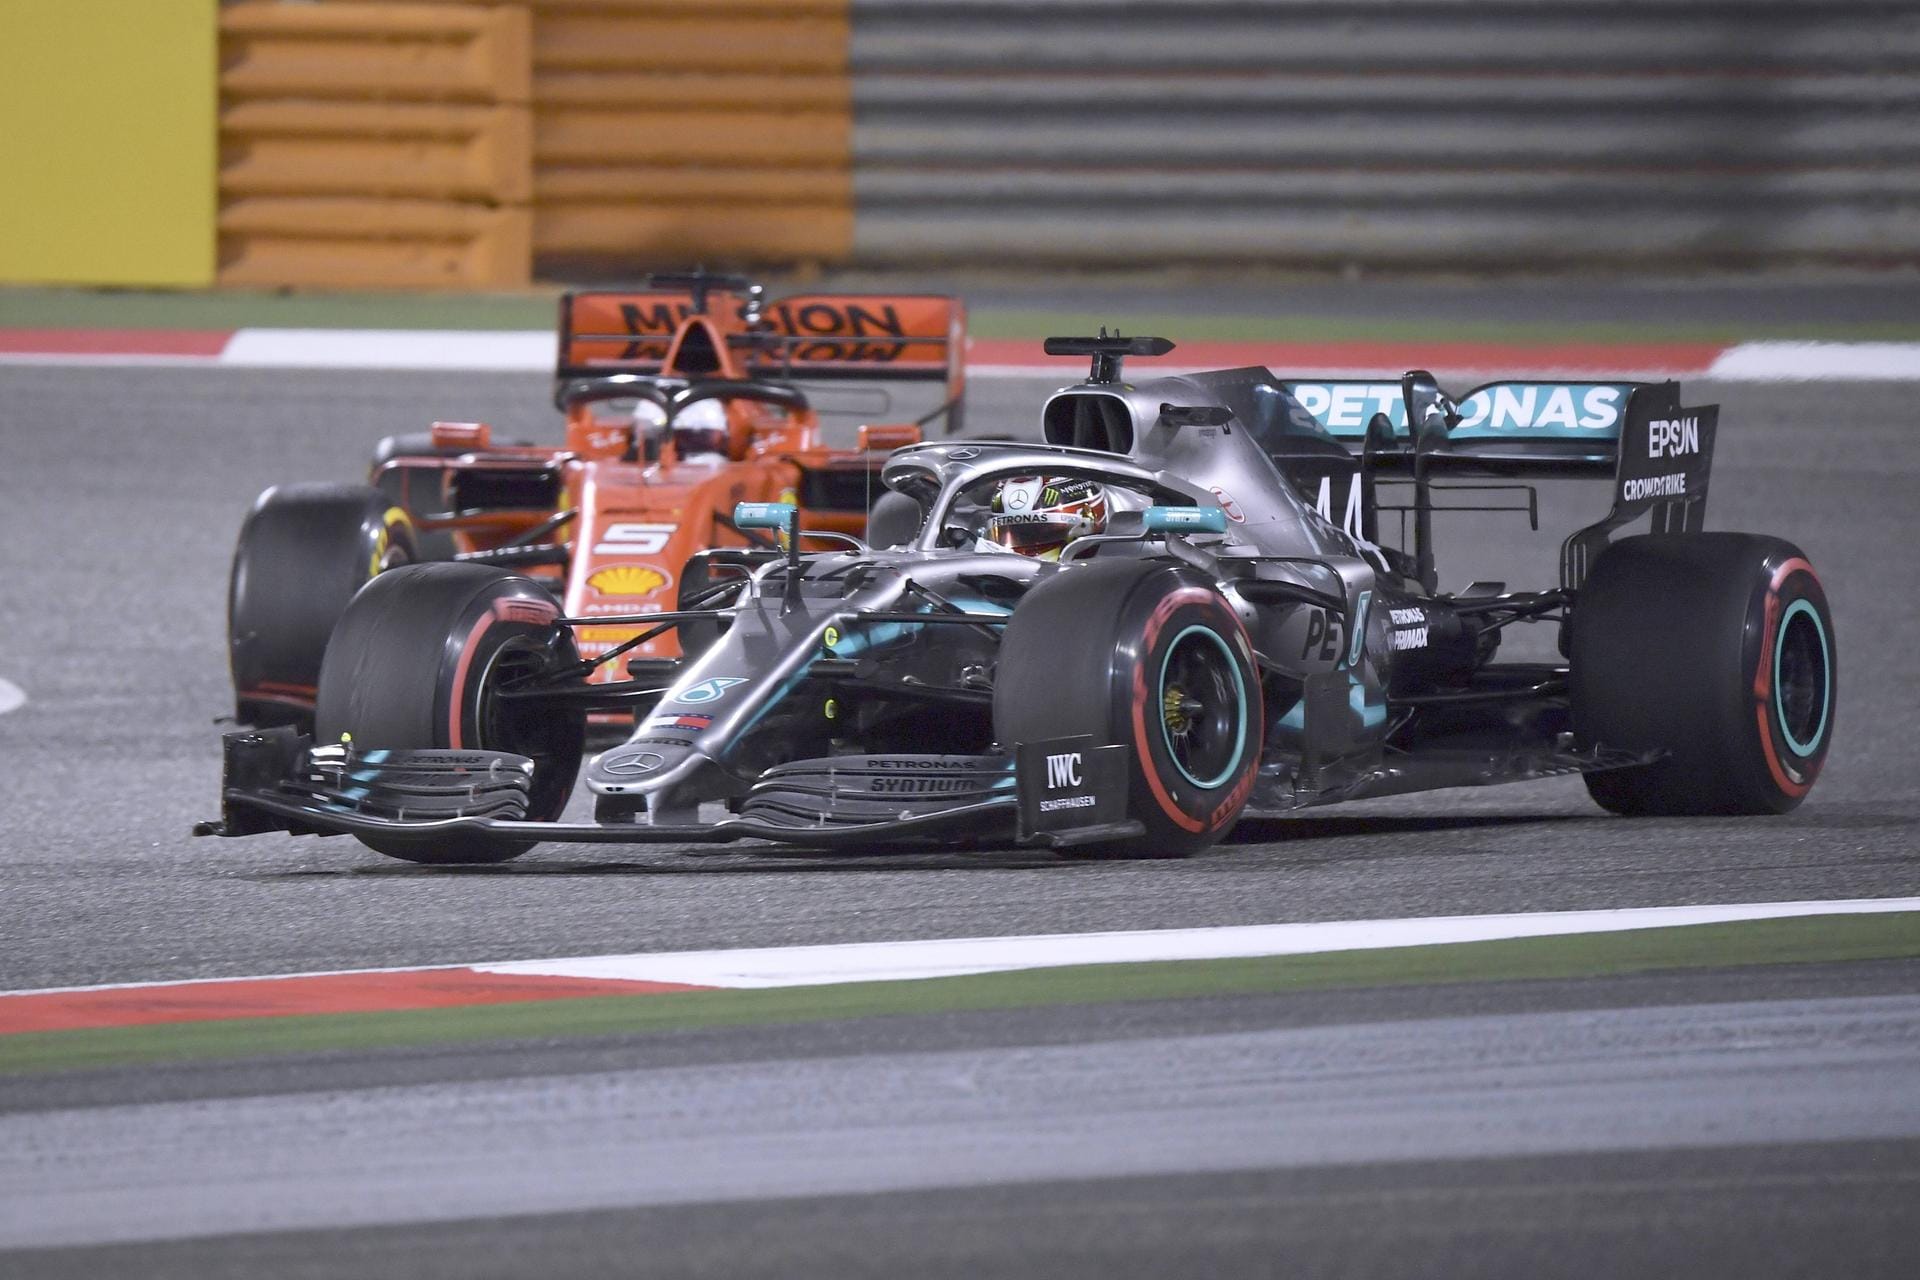 Großer Preis von Bahrain: Drama auf dem Bahrain International Circuit! Vettel und Hamilton kämpfen um Platz zwei, in Runde 37 zieht der Brite vorbei – und Vettel leistet sich dabei einen folgenschweren Dreher. Dann verliert er auch noch seinen Frontflügel, muss in die Box und fällt dadurch bis auf den neunten Rang zurück. Am Ende erkämpft sich Vettel immerhin noch Platz fünf.